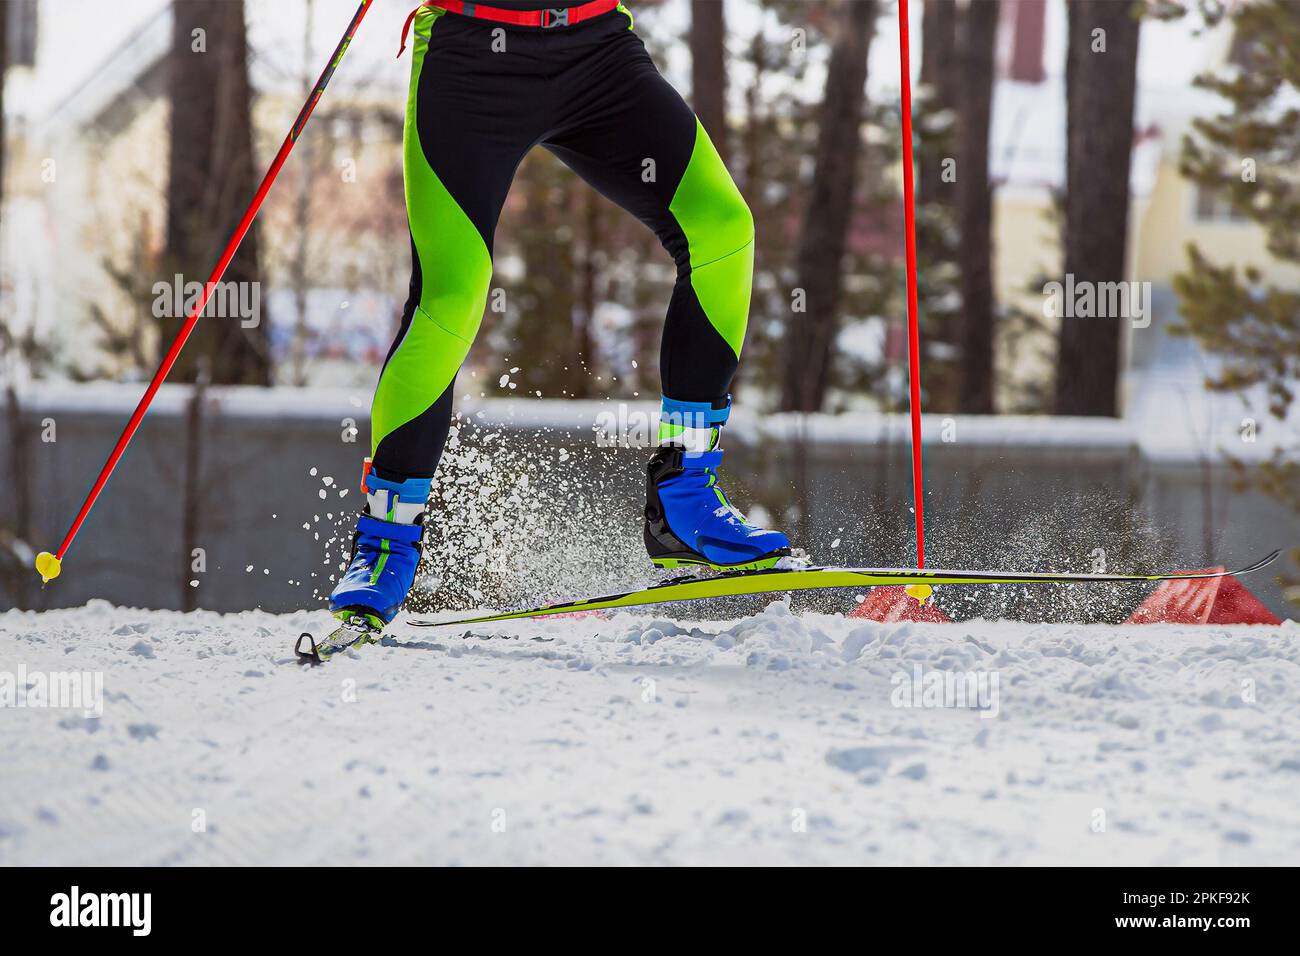 Nahaufnahmen der Beine Skifahrer laufen auf der Skipiste, Schnee spritzt unter Skiern und Stöcken, Wintersportwettbewerb Stockfoto